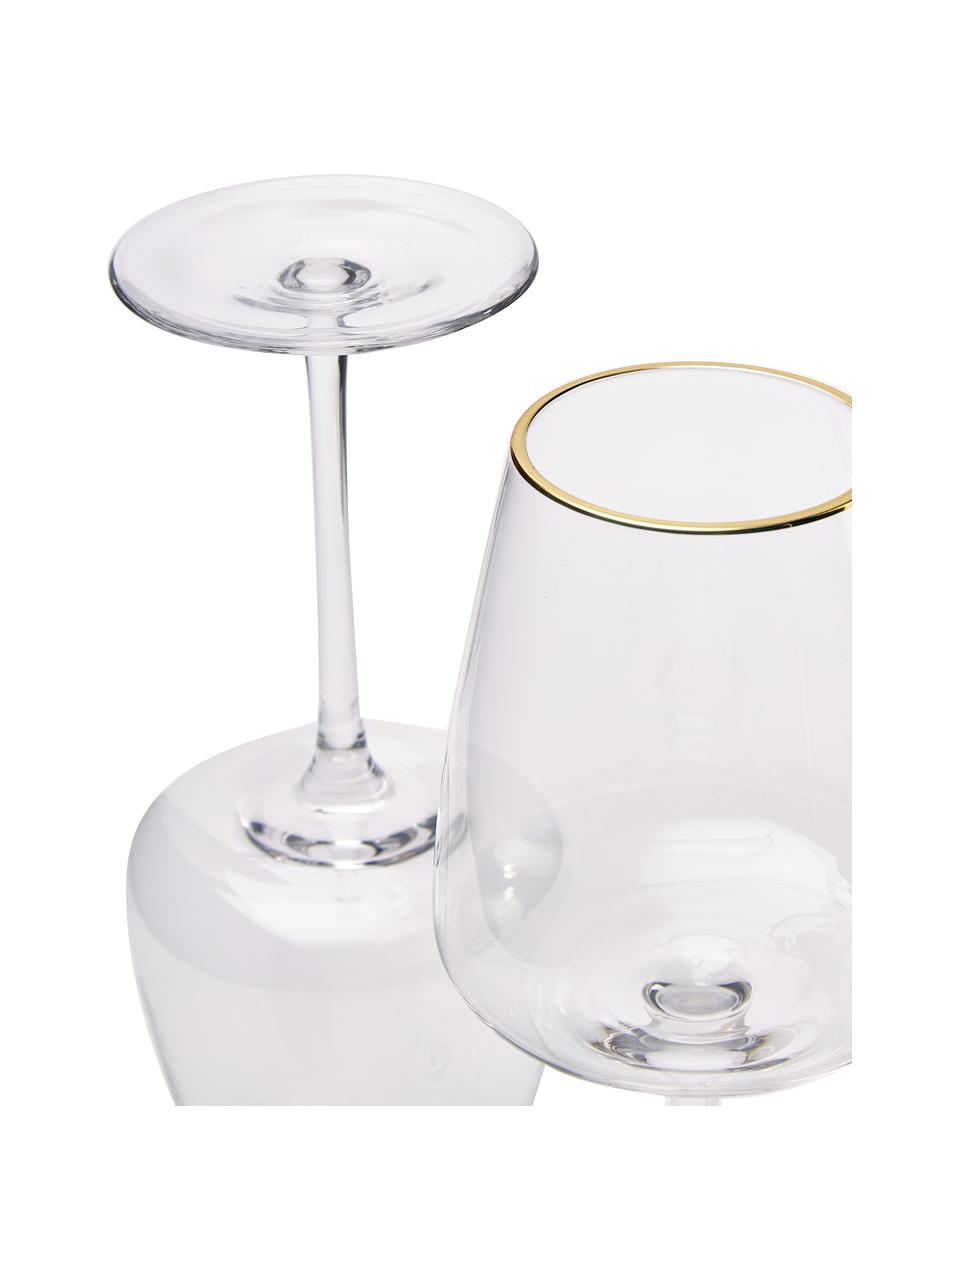 Mondgeblazen witte wijnglazen Ellery met goudkleurige rand, 4 stuks, Glas, Transparant met goudkleurige rand, Ø 9 x H 21 cm